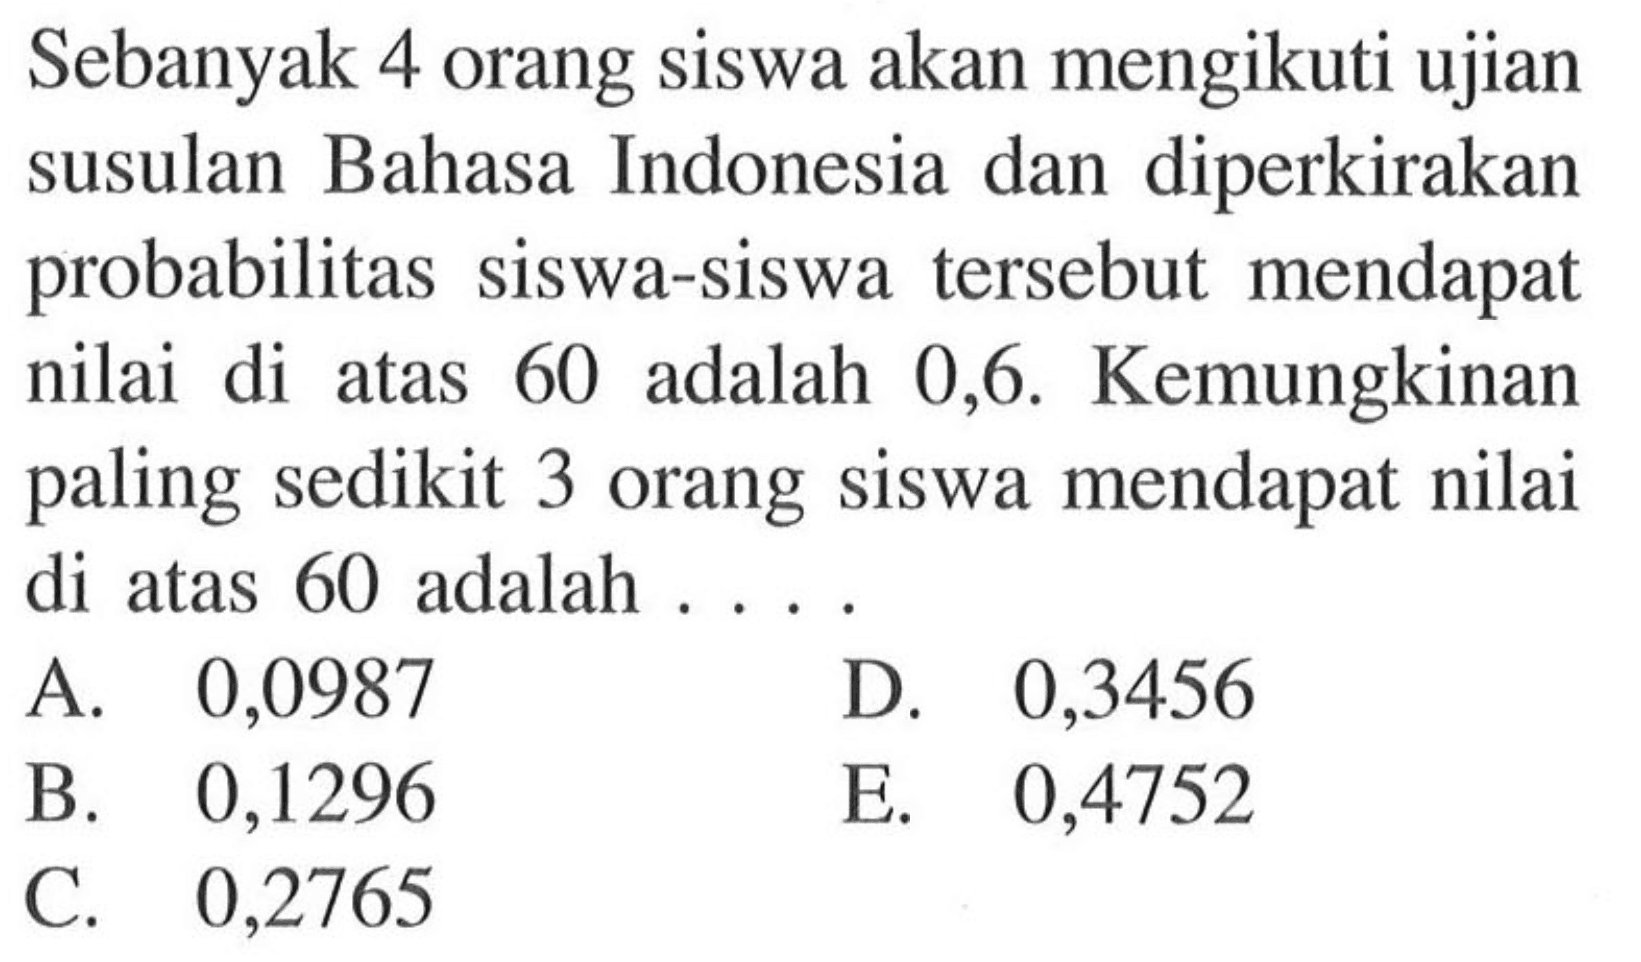 Sebanyak 4 orang siswa akan mengikuti ujian susulan Bahasa Indonesia dan diperkirakan probabilitas siswa-siswa tersebut mendapat nilai di atas 60 adalah 0,6 . Kemungkinan paling sedikit 3 orang siswa mendapat nilai di atas 60 adalah . . . .